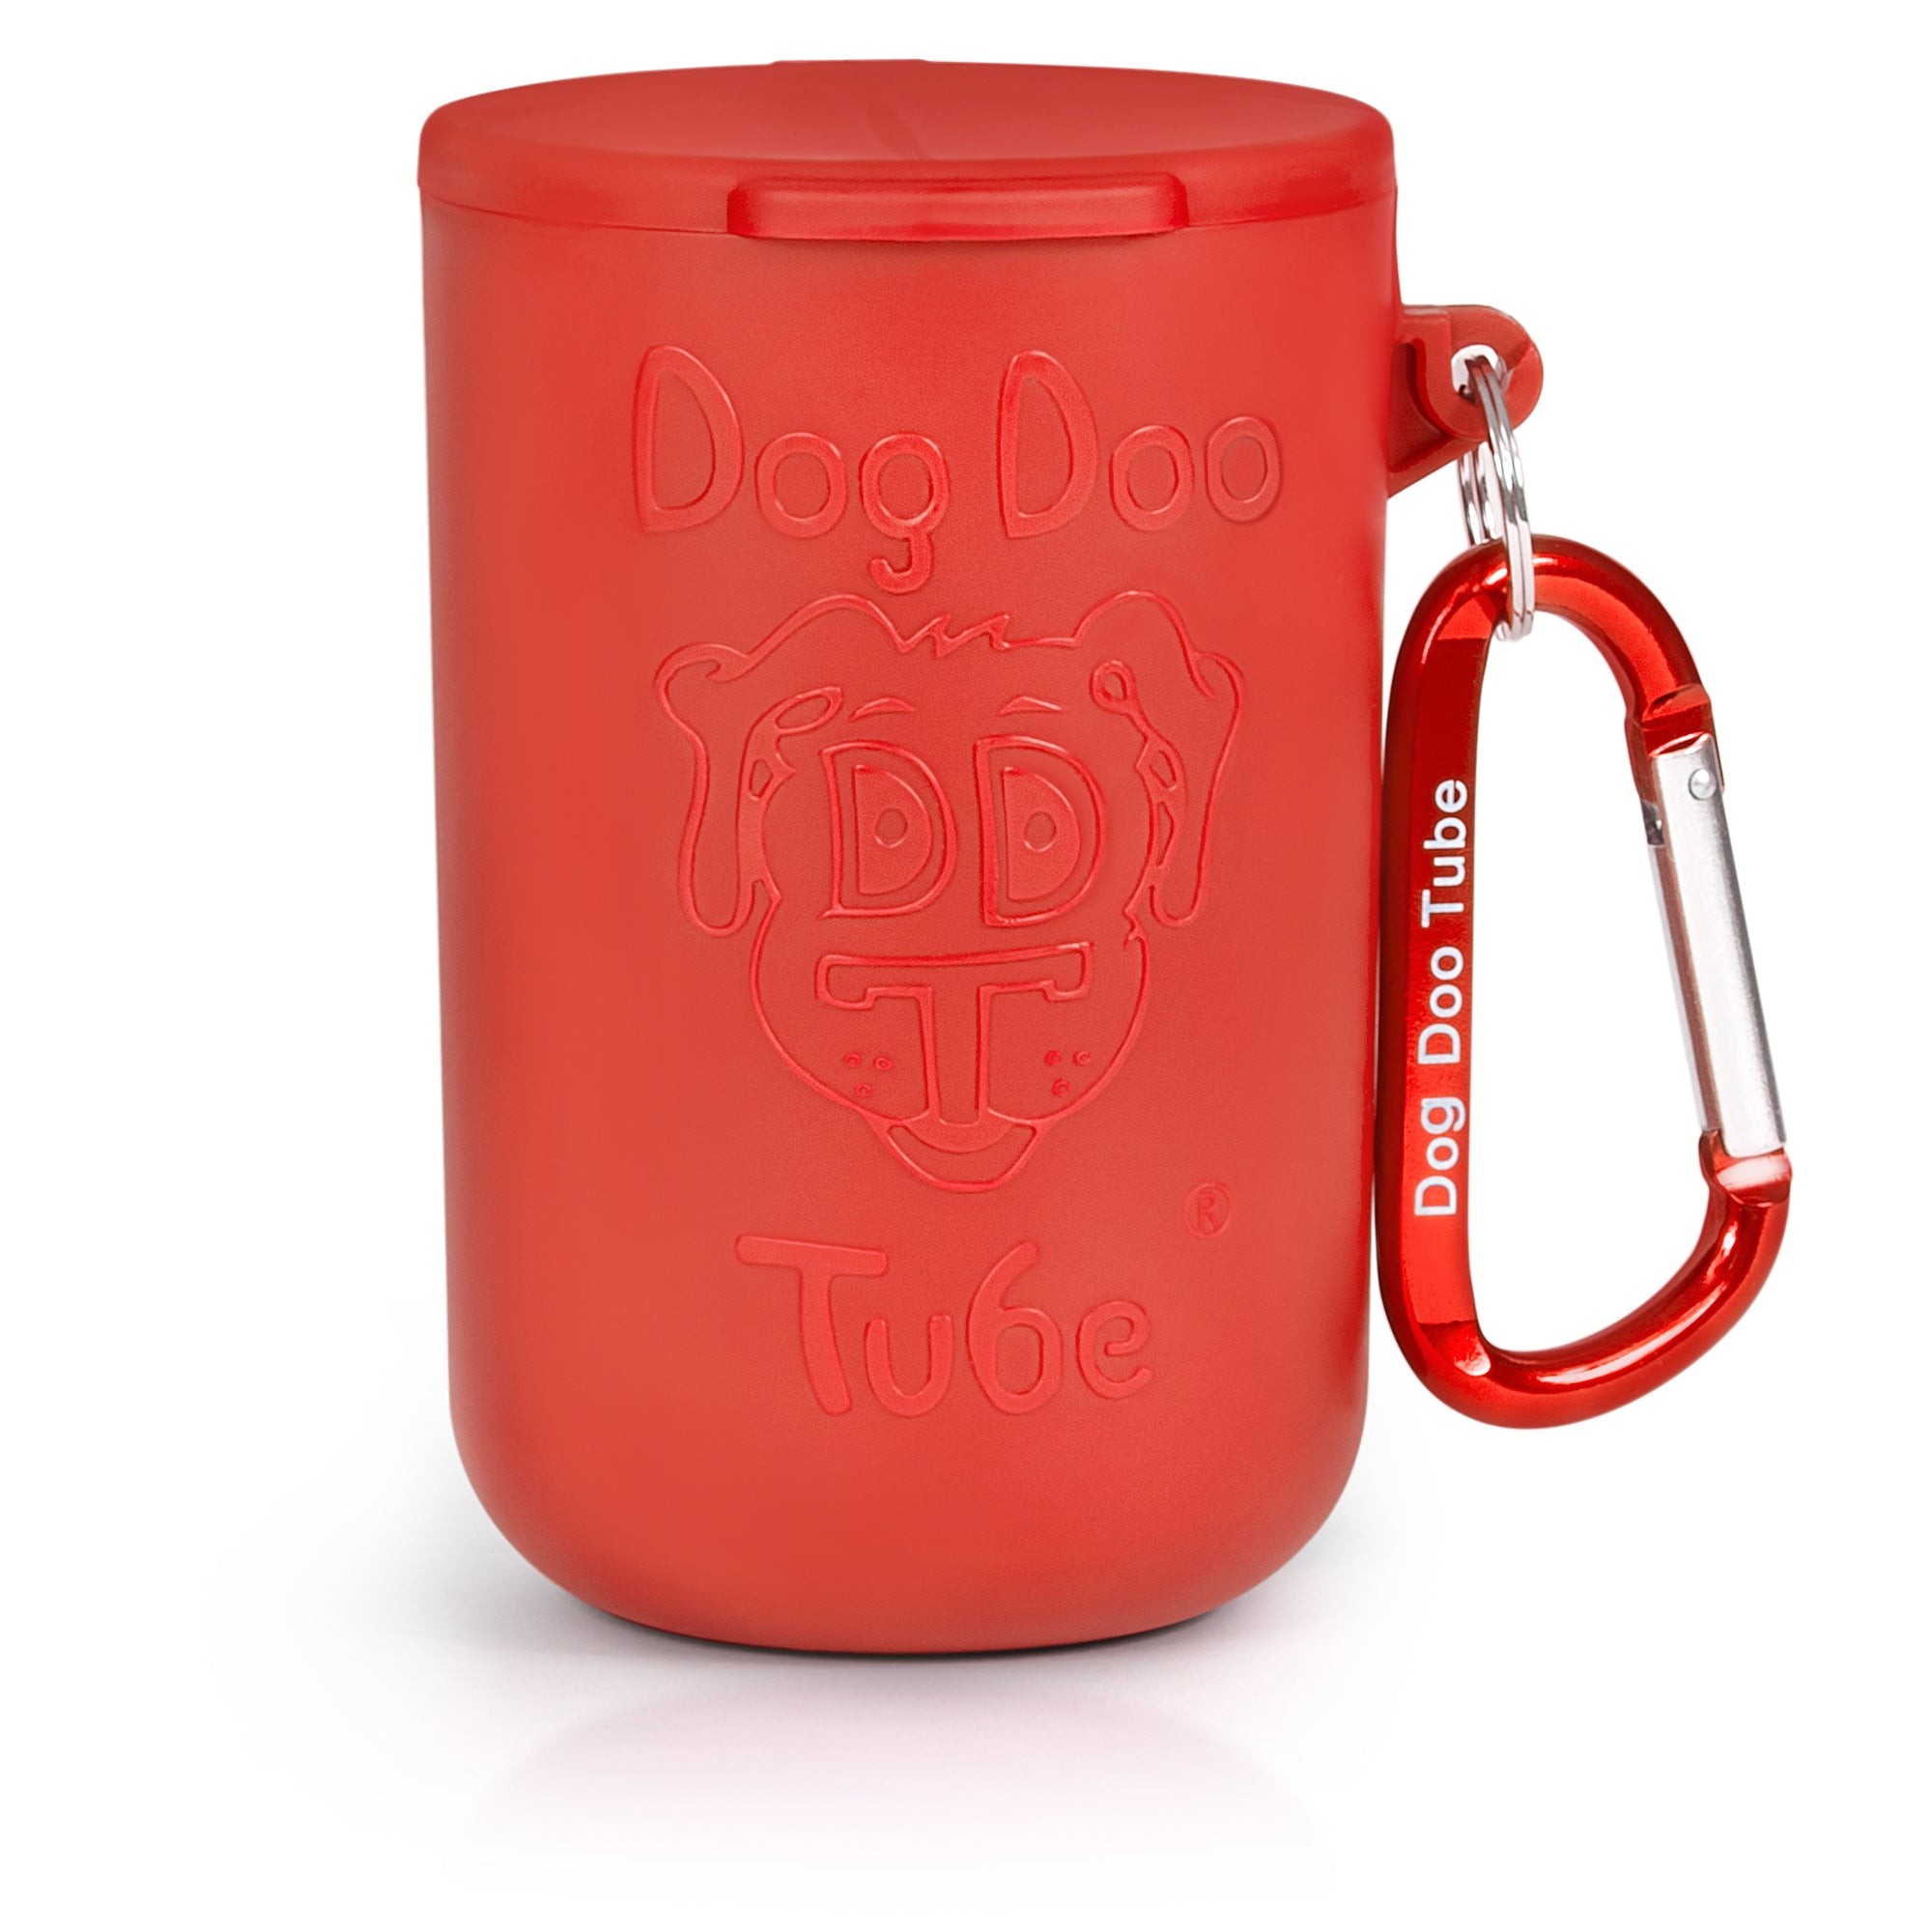 Dog Doo Tube in Red